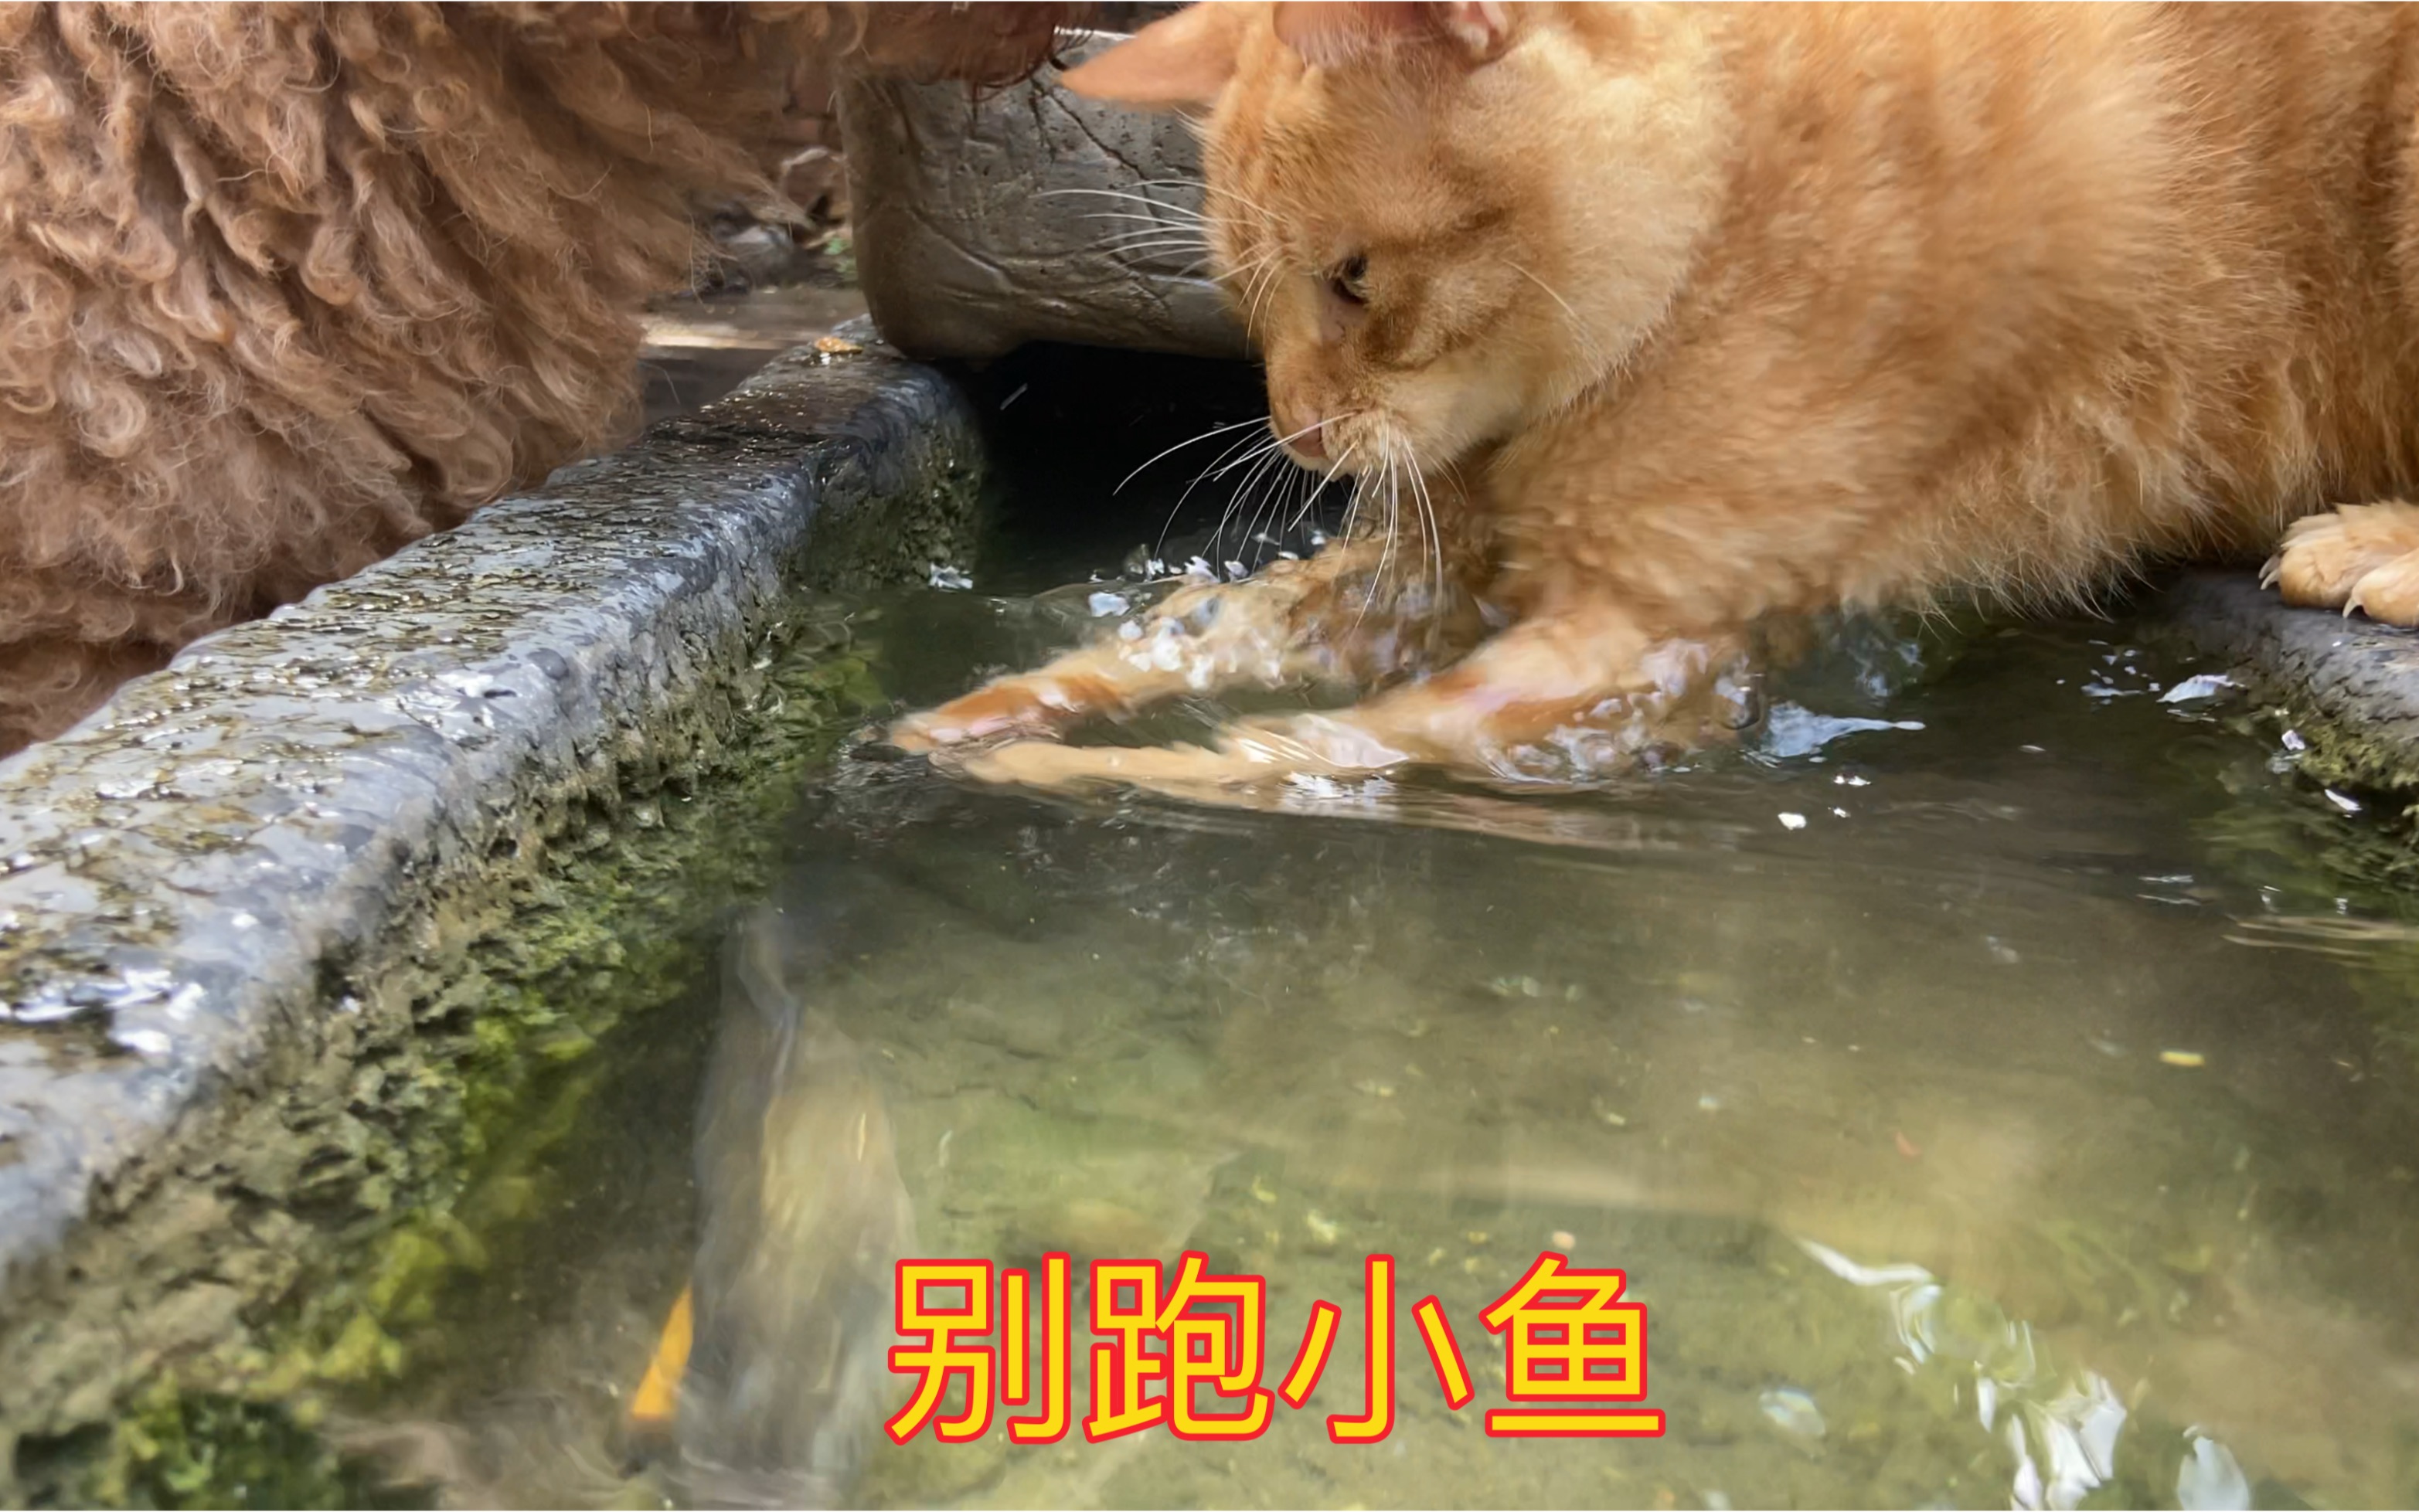 橘猫小黄皮抓鱼现场